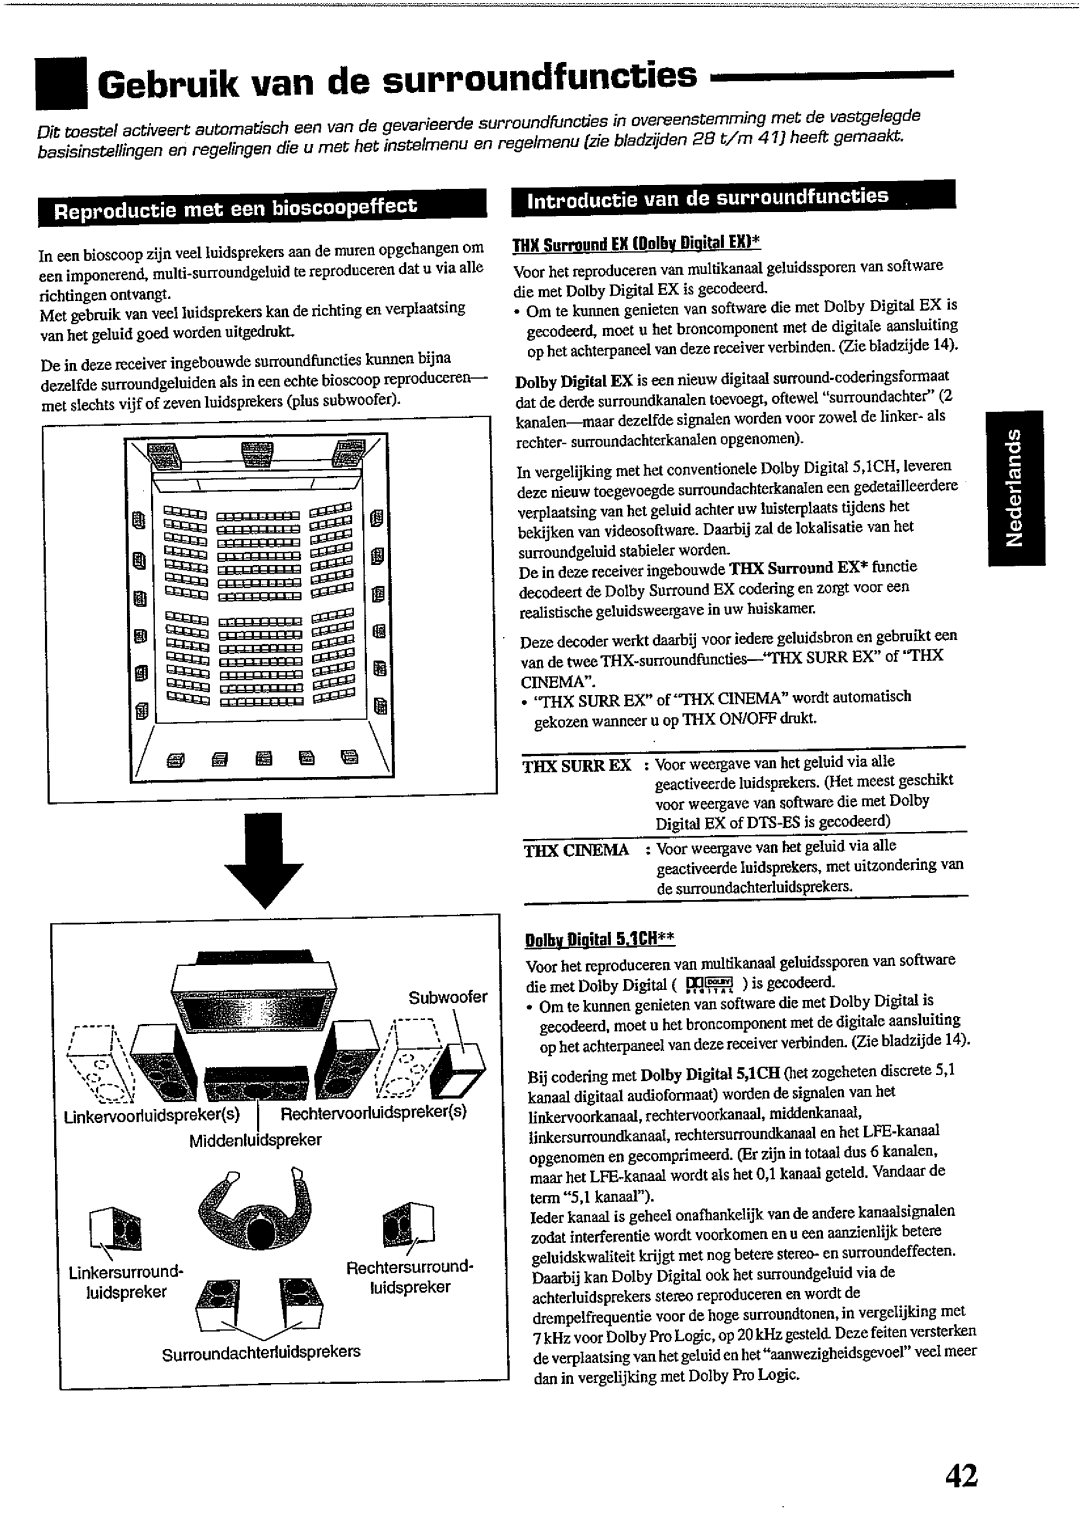 JVC RX-DP10RSL manual 